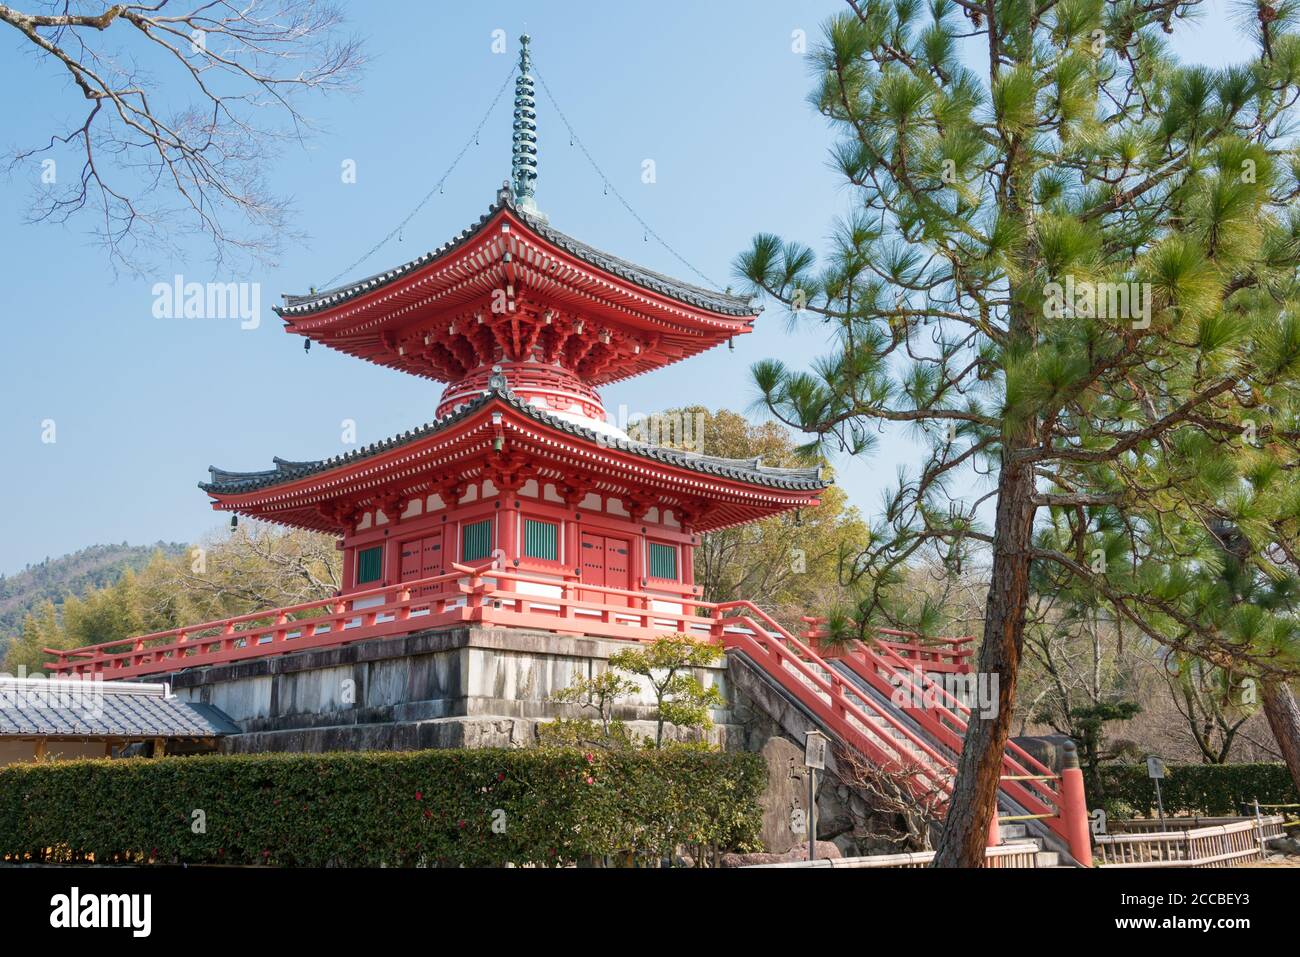 Kyoto, Japan - Pagode am Daikaku-ji Tempel in Kyoto, Japan. Der Ort war ursprünglich eine Residenz von Kaiser Saga (786-842). Stockfoto